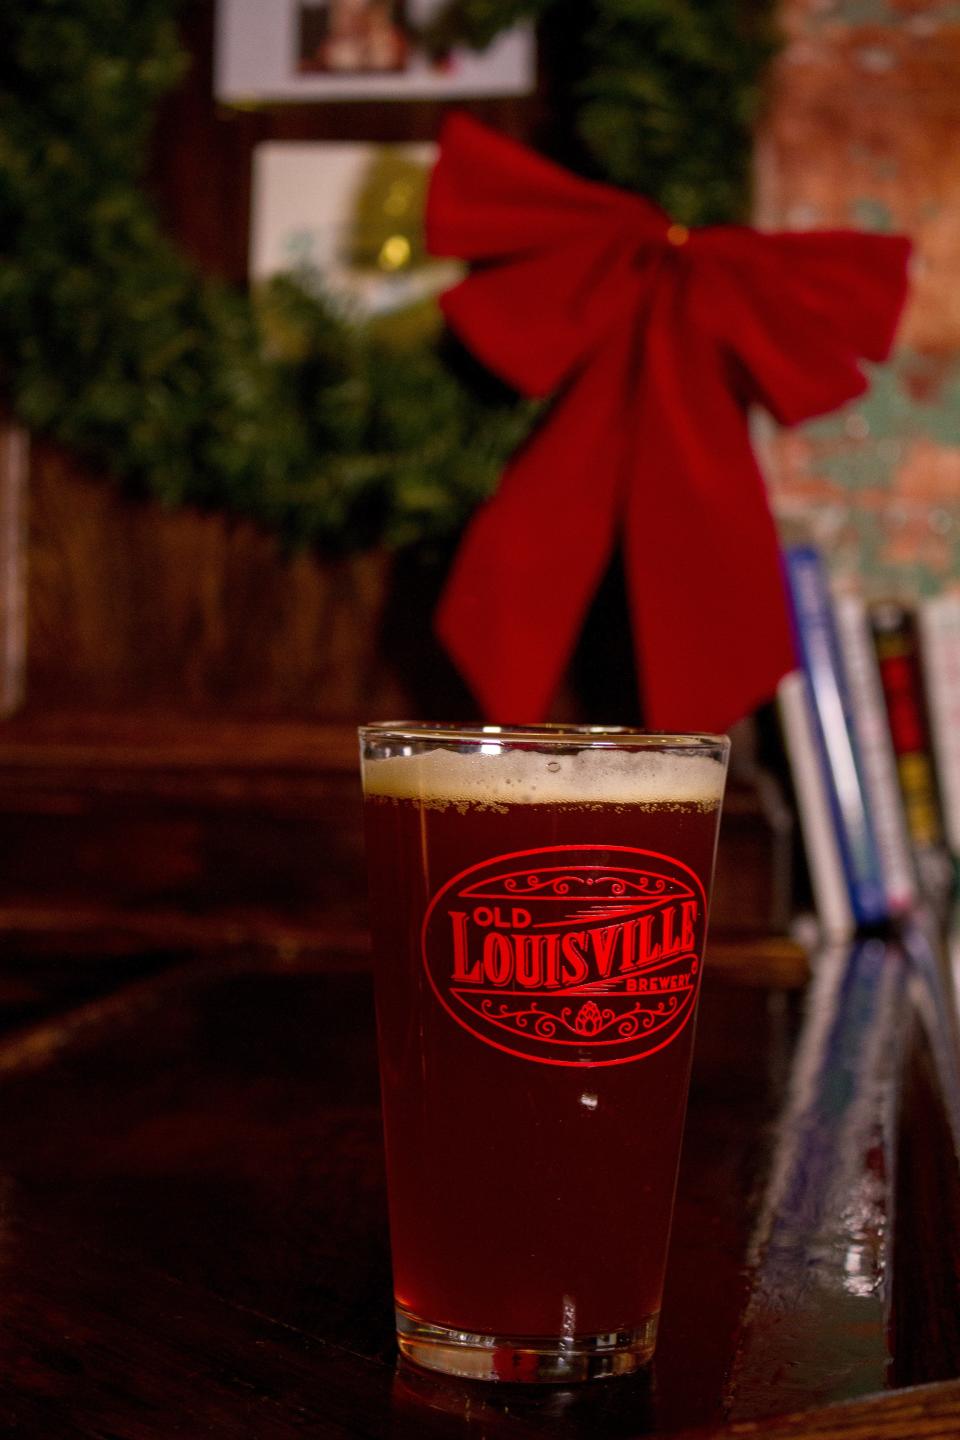 Old Louisville Brewery's "Christmas Cookies" beer